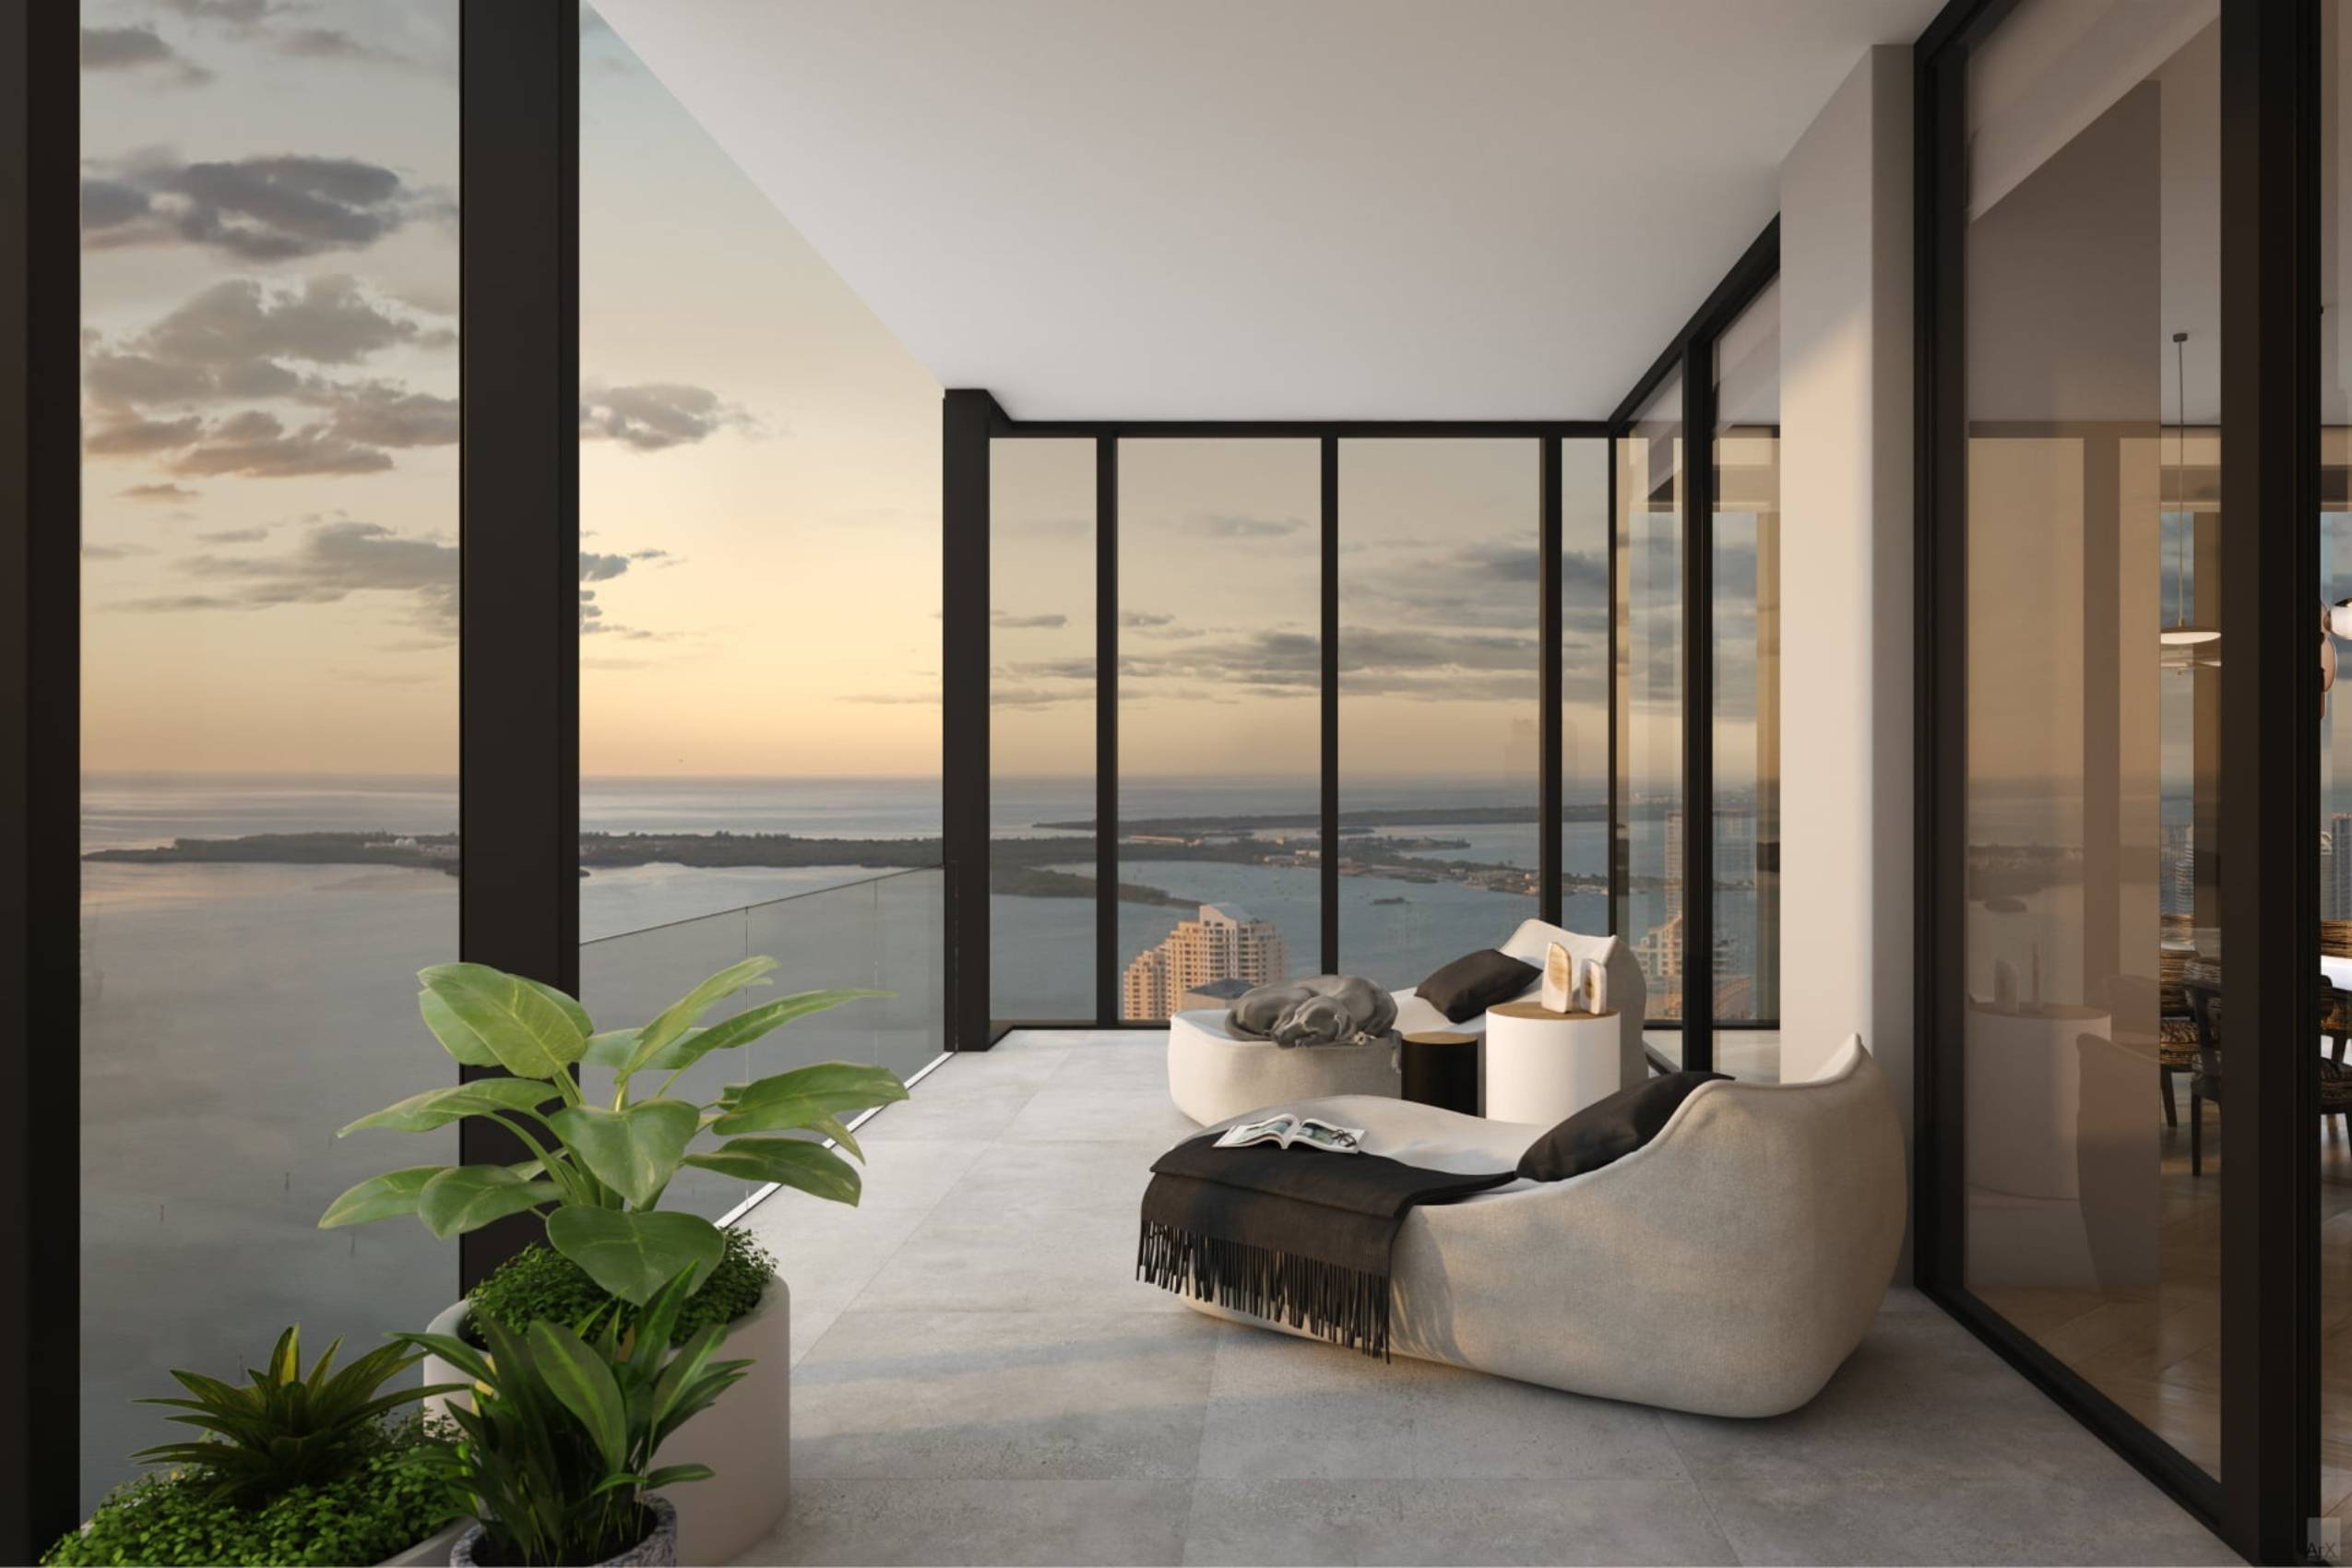 Downtown Miami Luxury Sky Villa | Waldorf Astoria Residences | 4 Chambres, 4,5 Salles De Bain | Vue sur la ville et l'eau